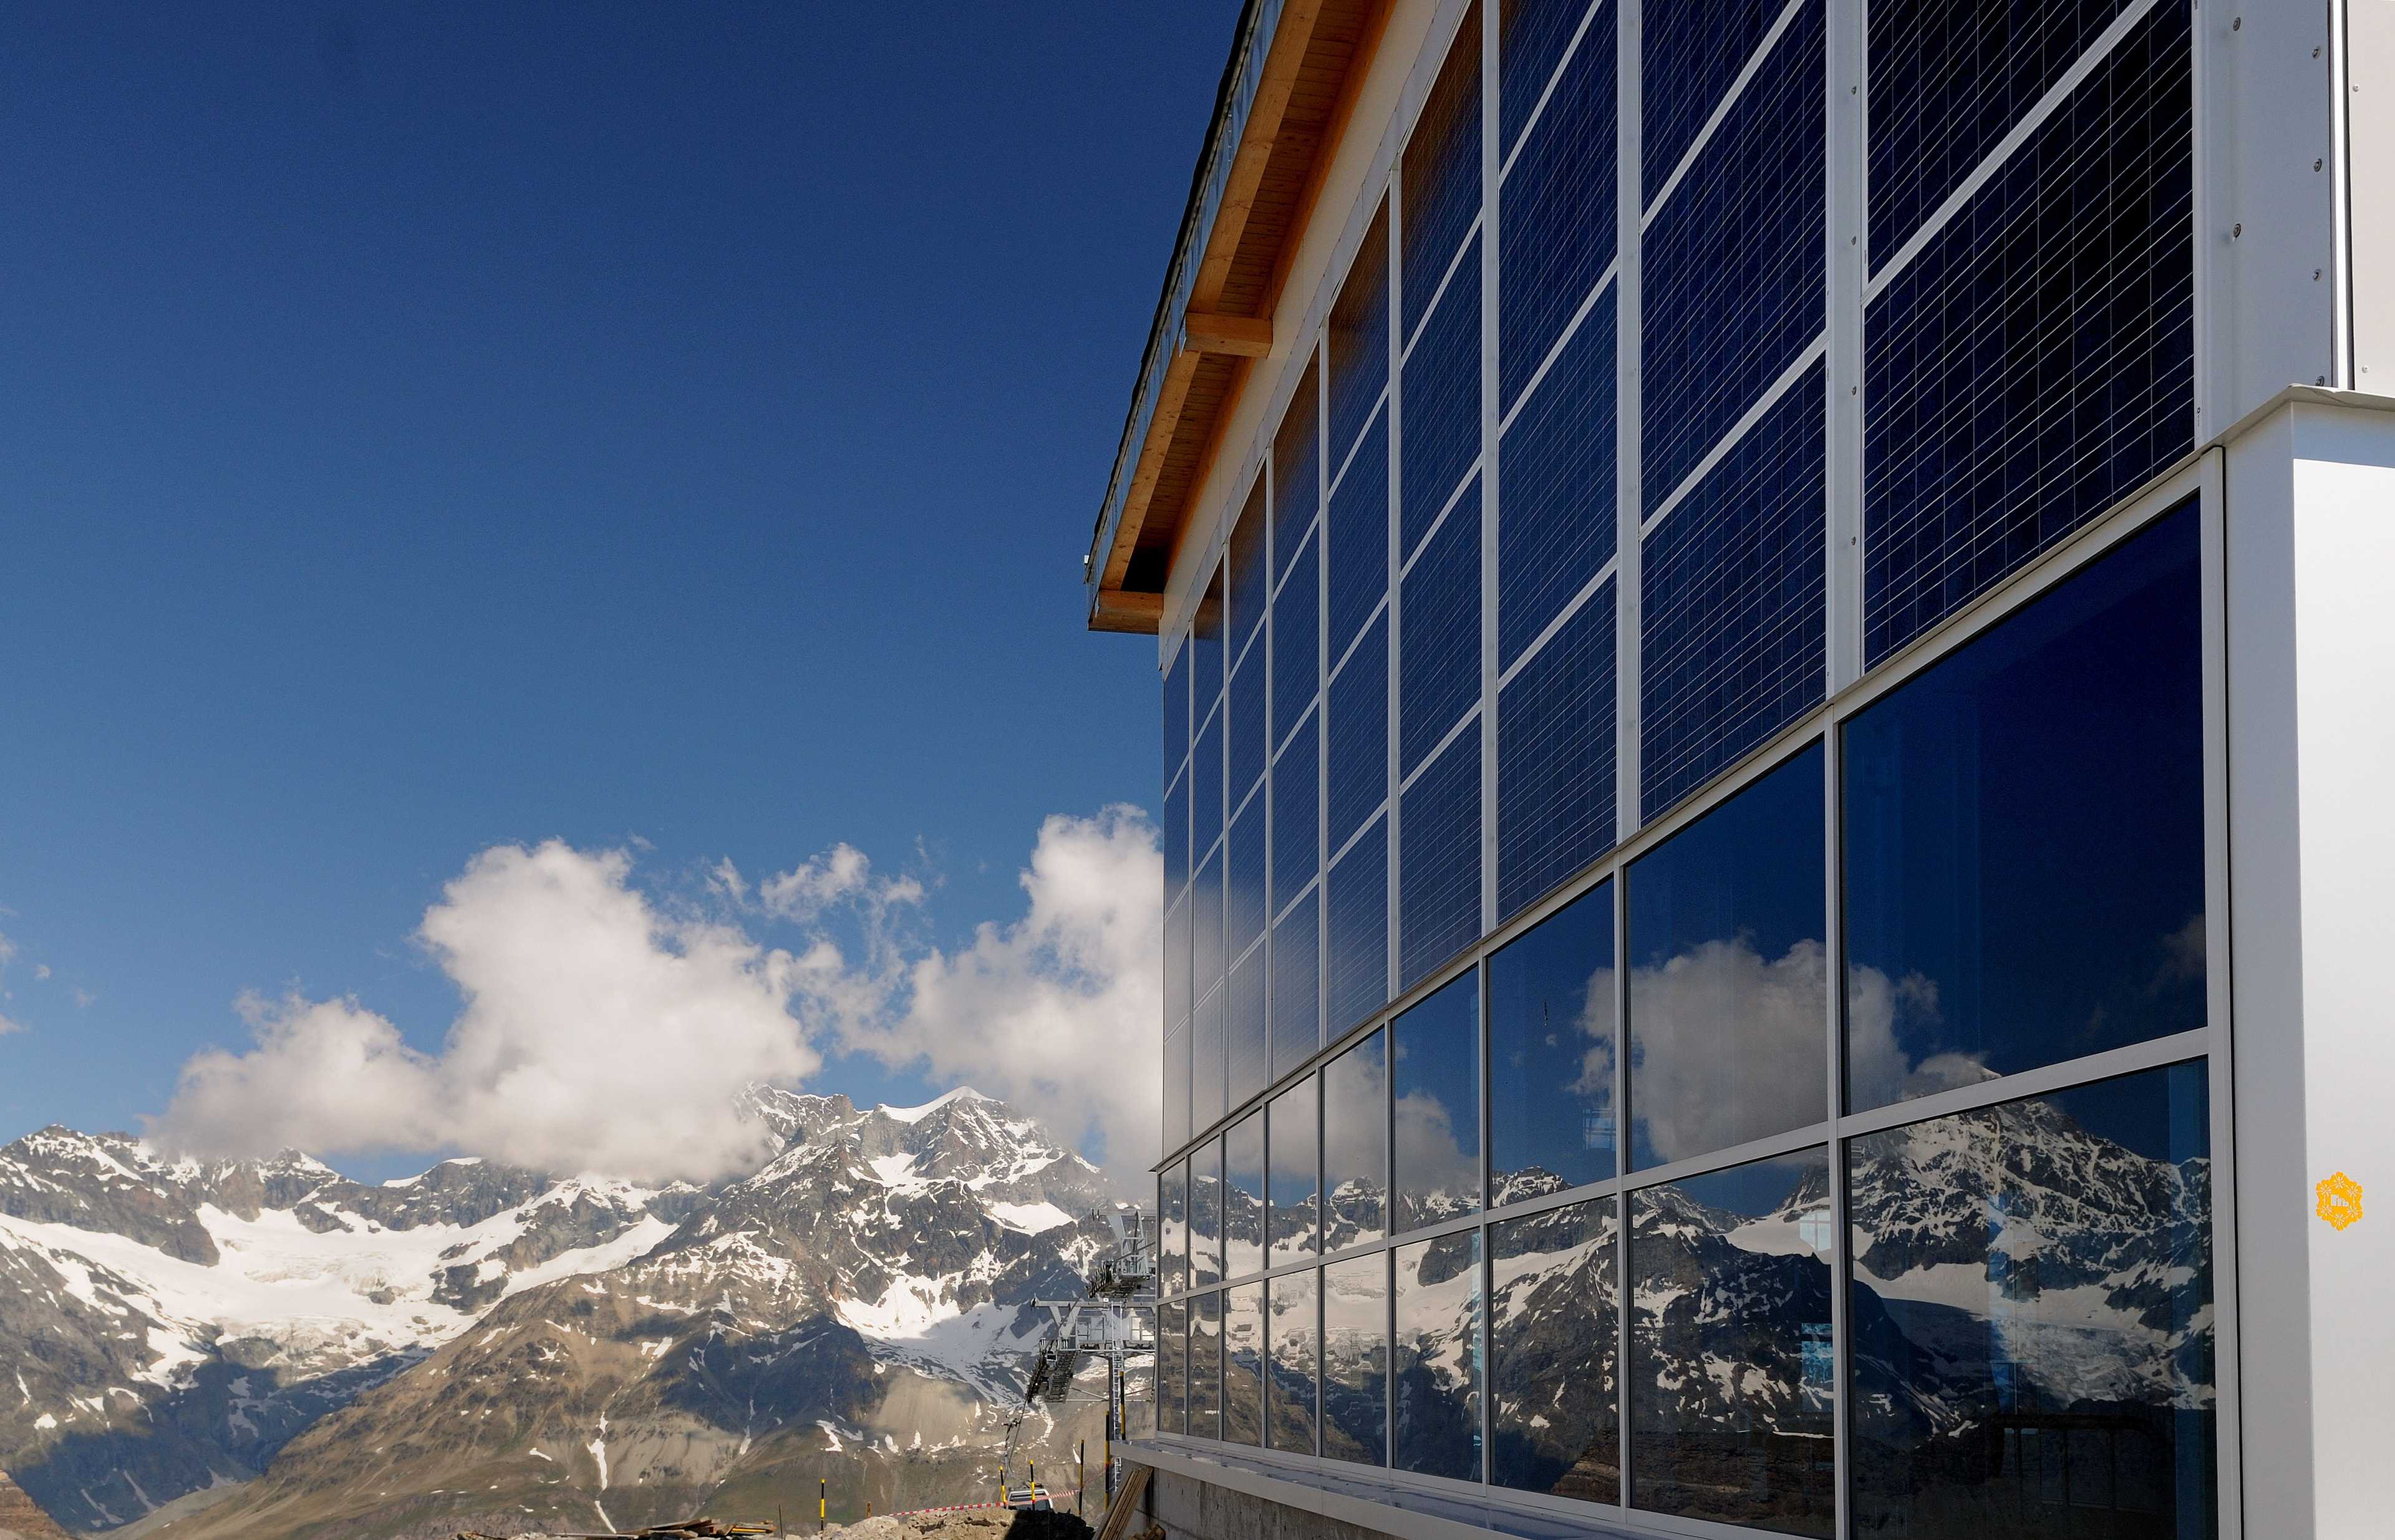 Panele słoneczne na stacji kolei 3-S, Zermatt